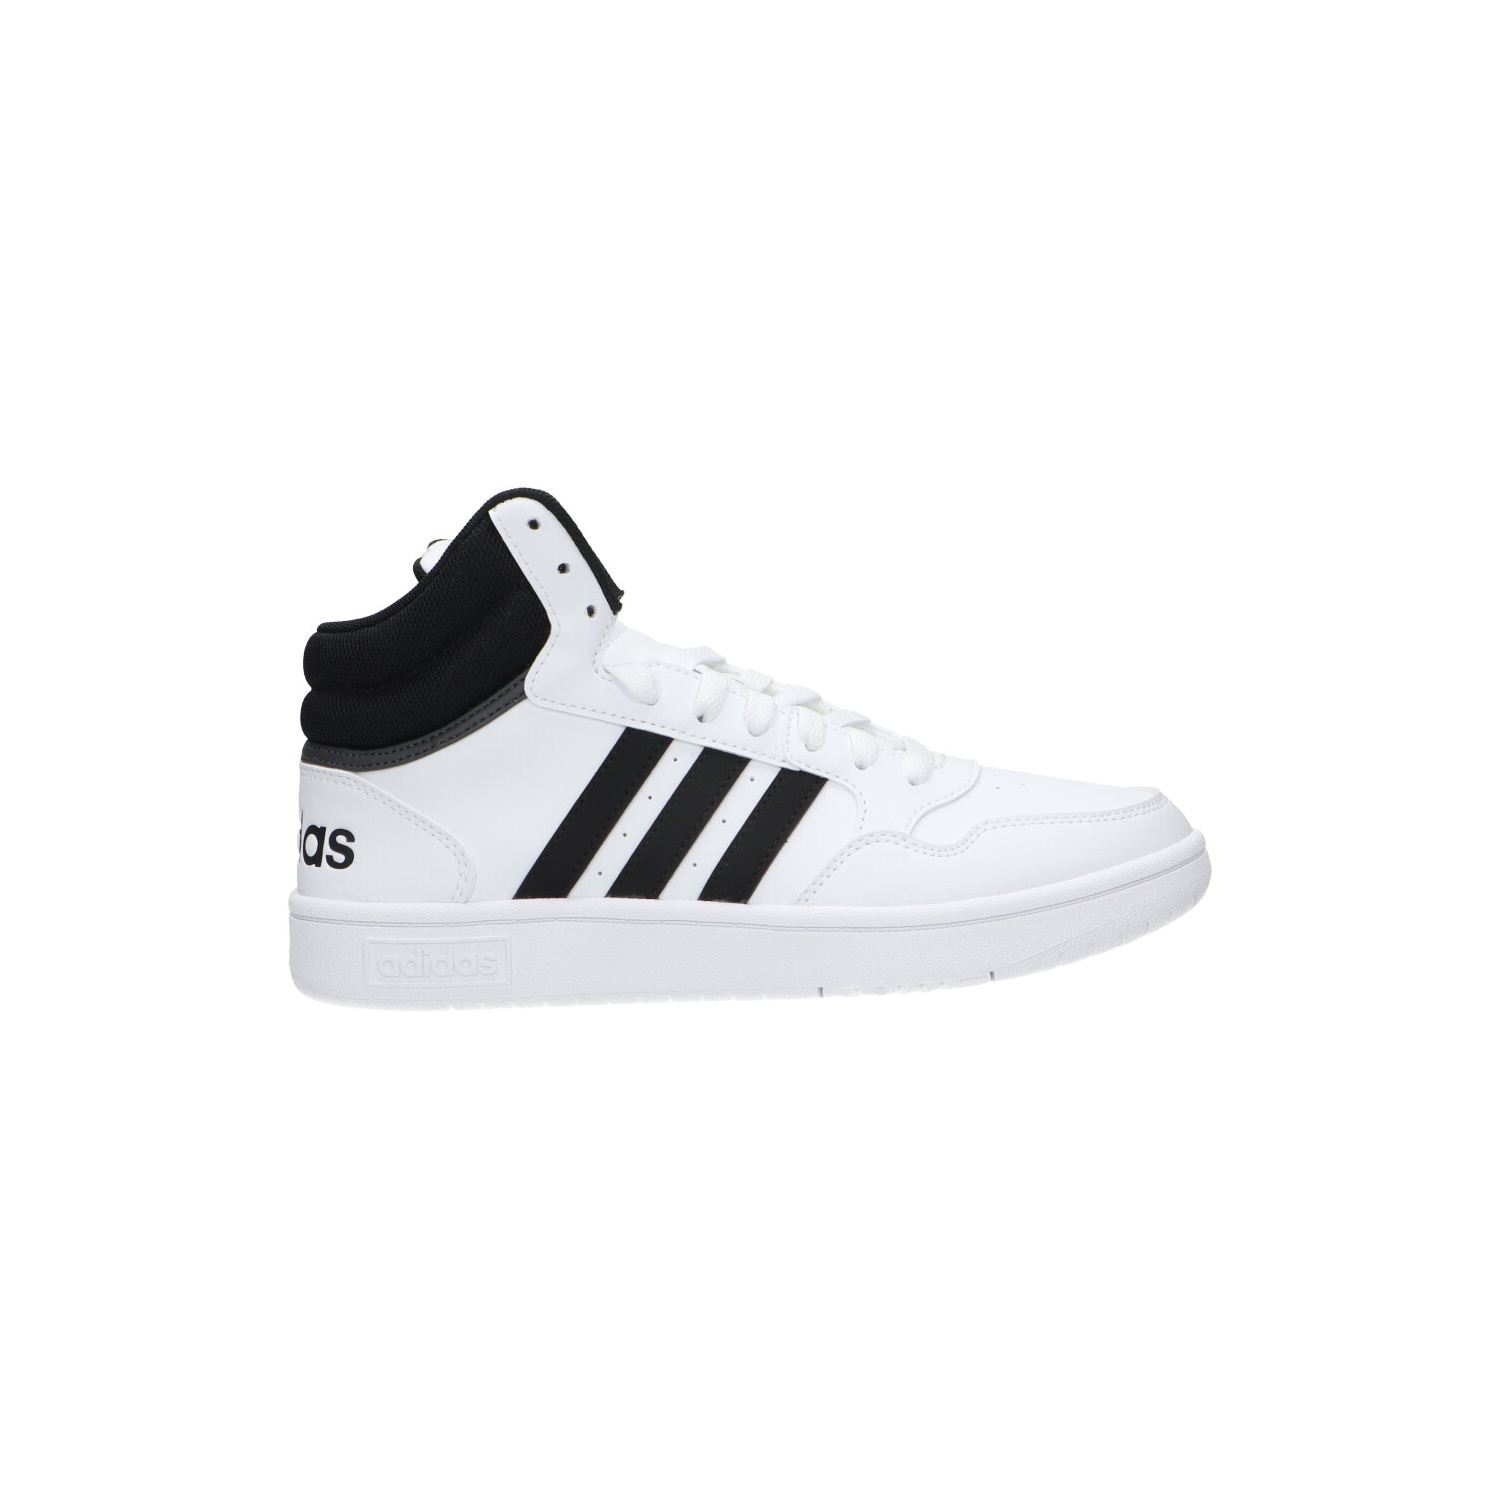 Wonen grootmoeder test Adidas Hoge sneaker Wit - Hoge sneakers - Schoenen - Heren - Berca.be